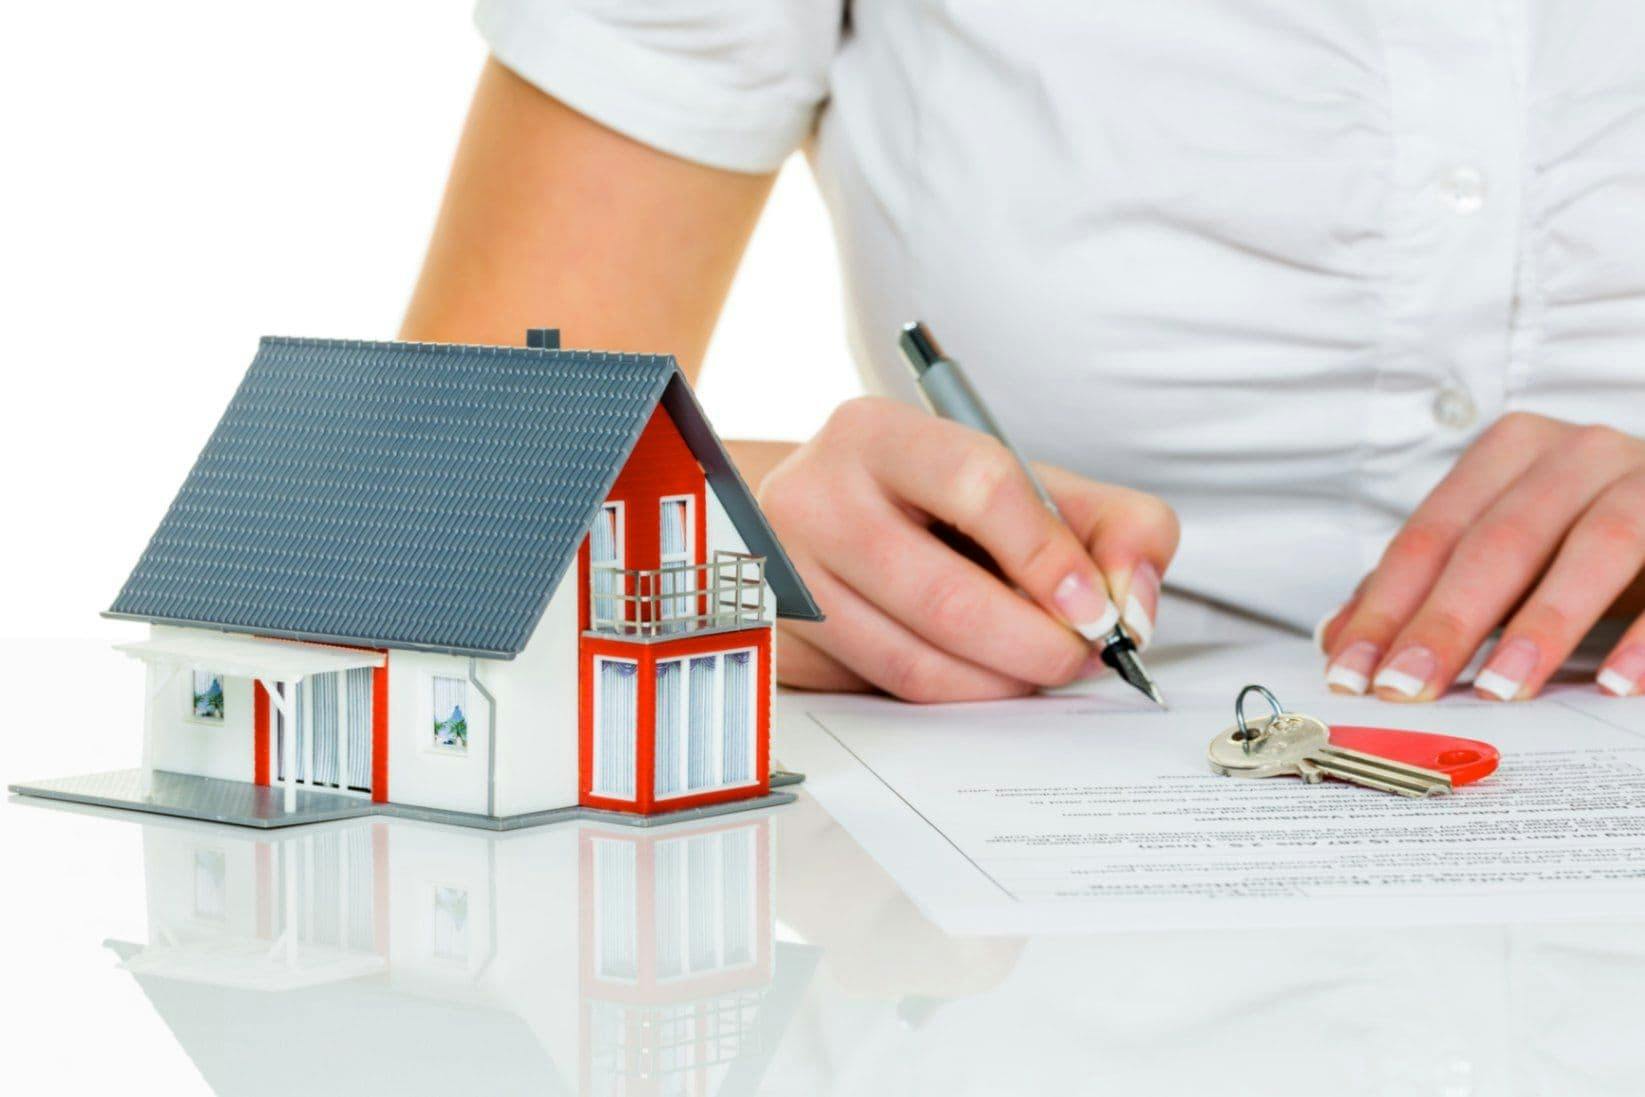 Grundlagen zur Immobilienfinanzierung werden durchgearbeitet. Ein Haus steht als Modell auf dem Tisch. Eine Person macht sich Notizen.